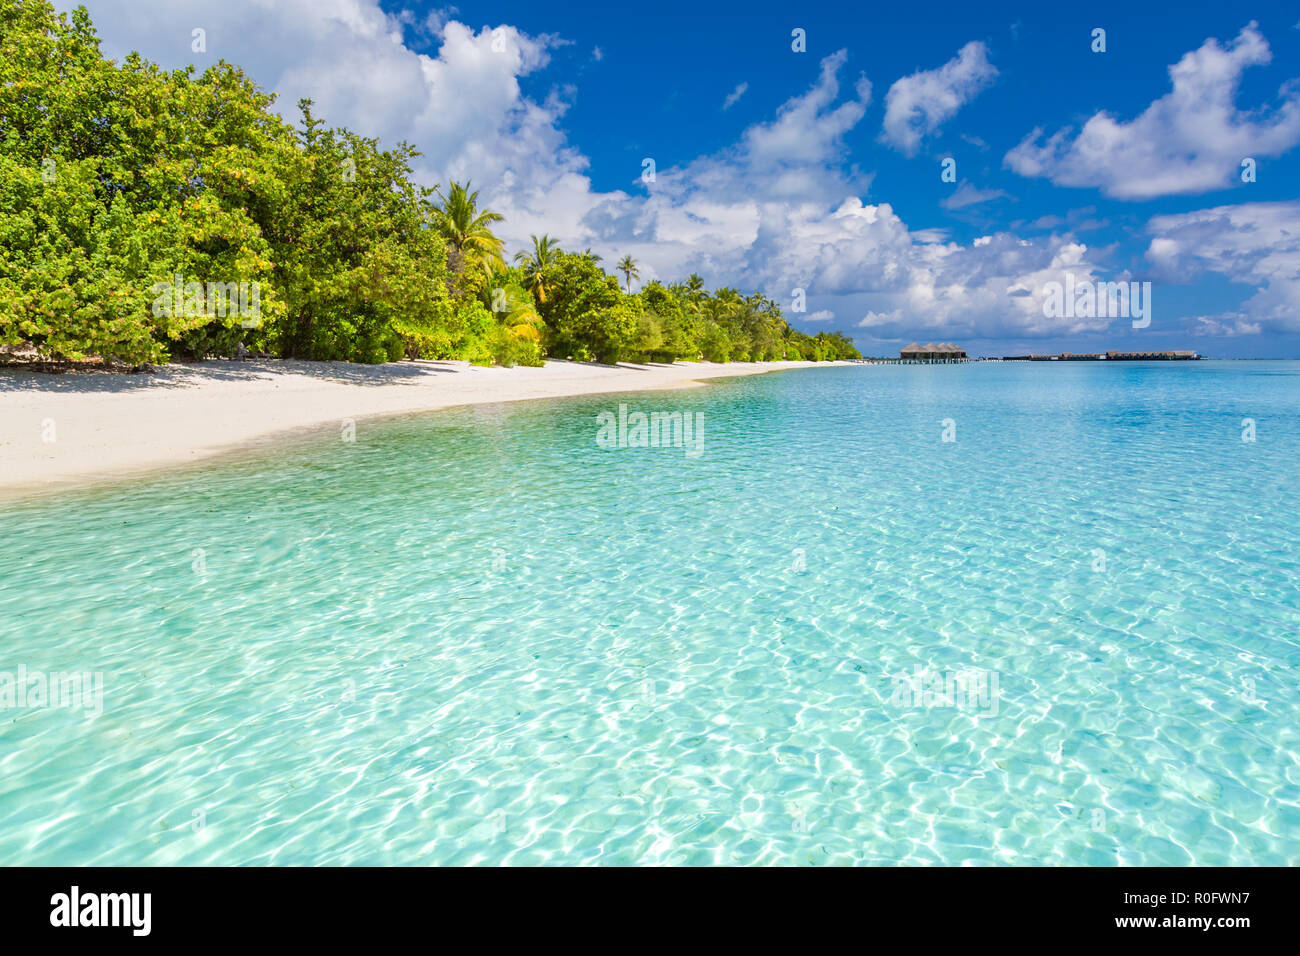 Plage nature, paysage des Maldives avec mer bleue, ciel bleu et de palmiers sur sable blanc. Scène tropical parfait Banque D'Images